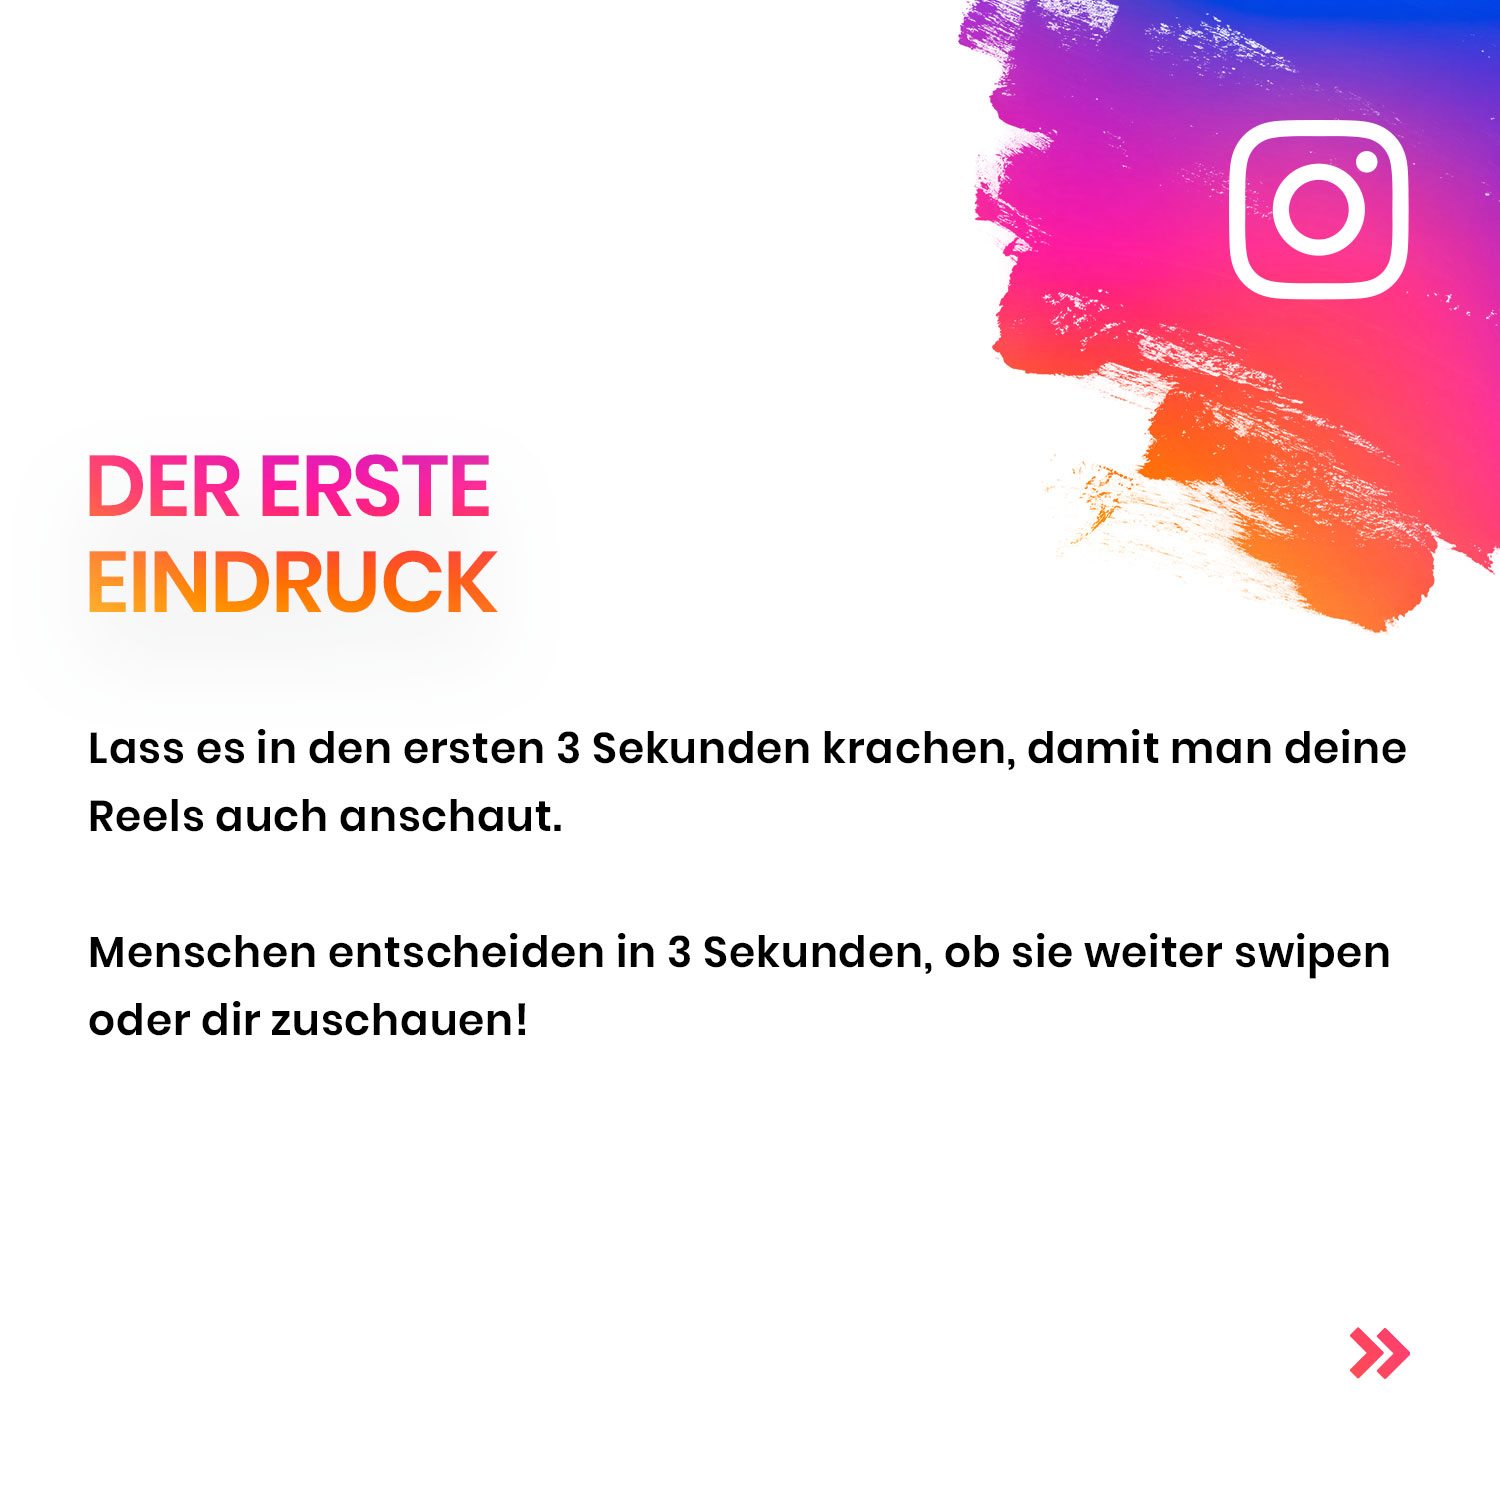 Instagram Reels verbessern - new media labs